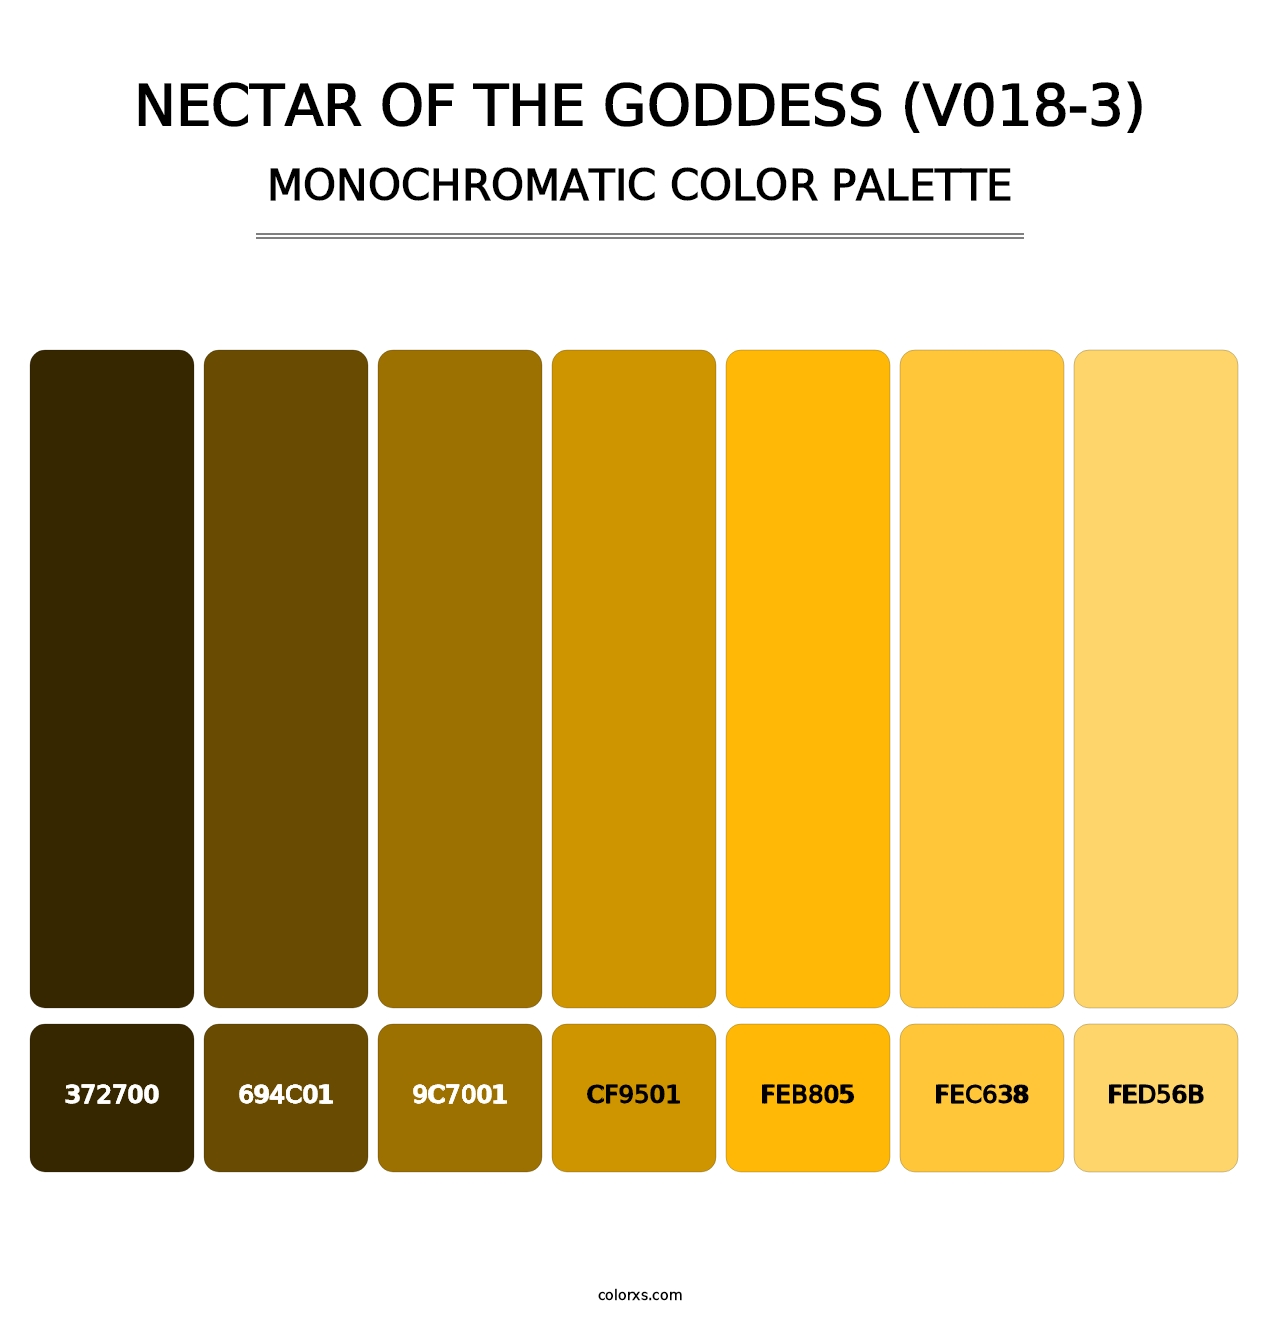 Nectar of the Goddess (V018-3) - Monochromatic Color Palette